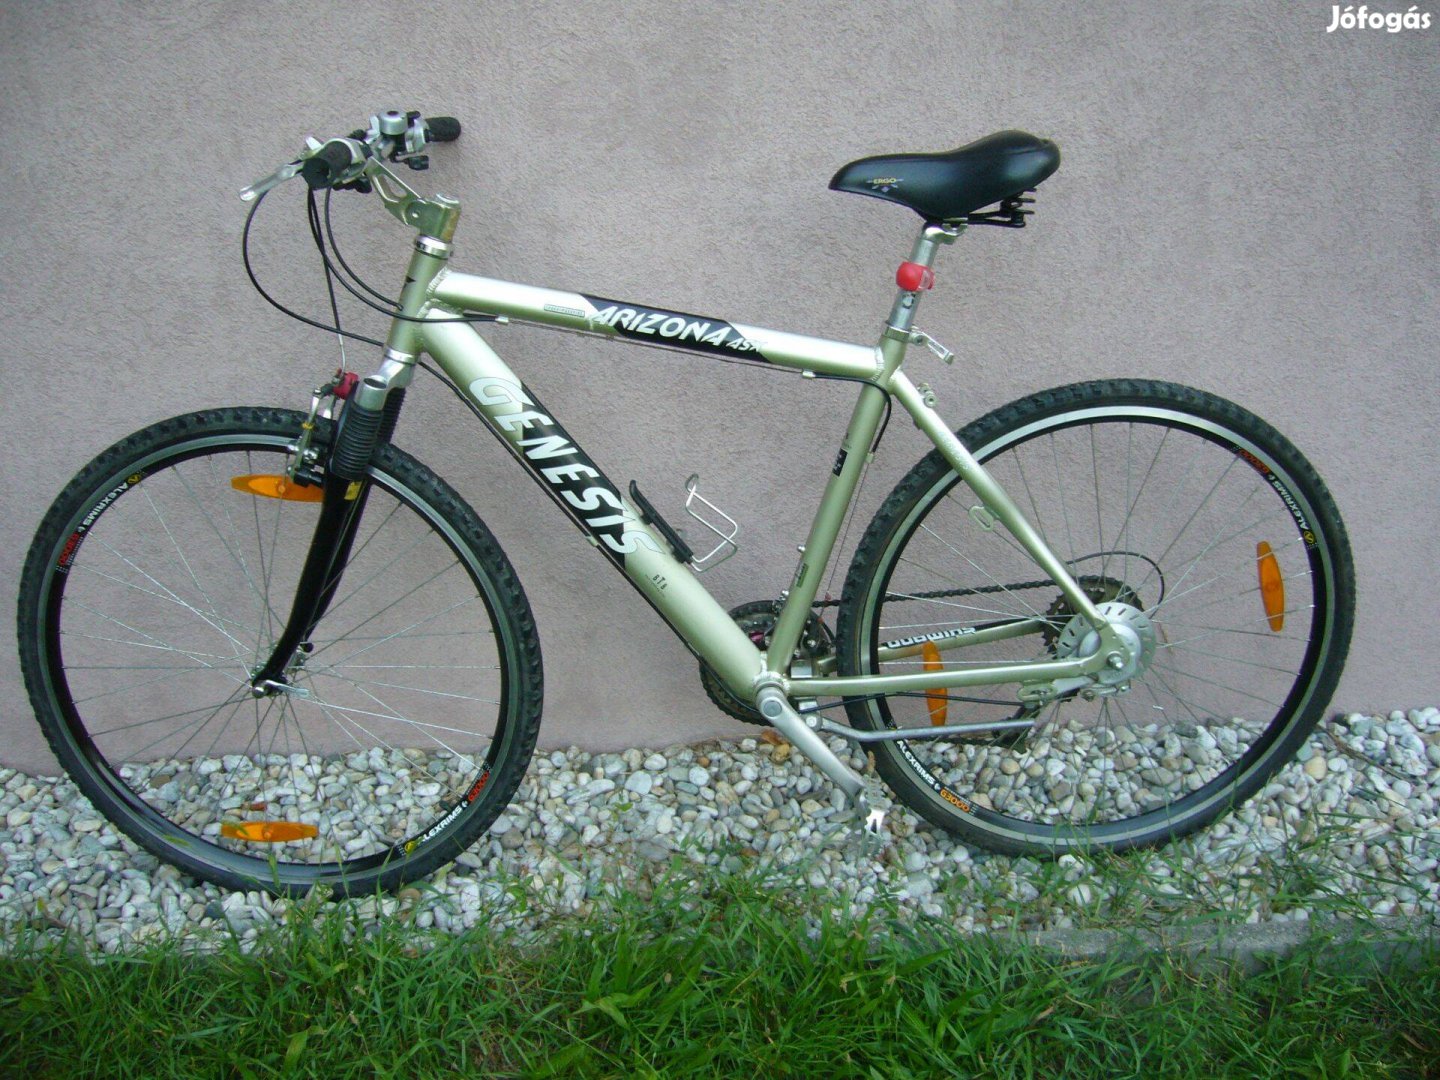 Genesis 28" kerékpár